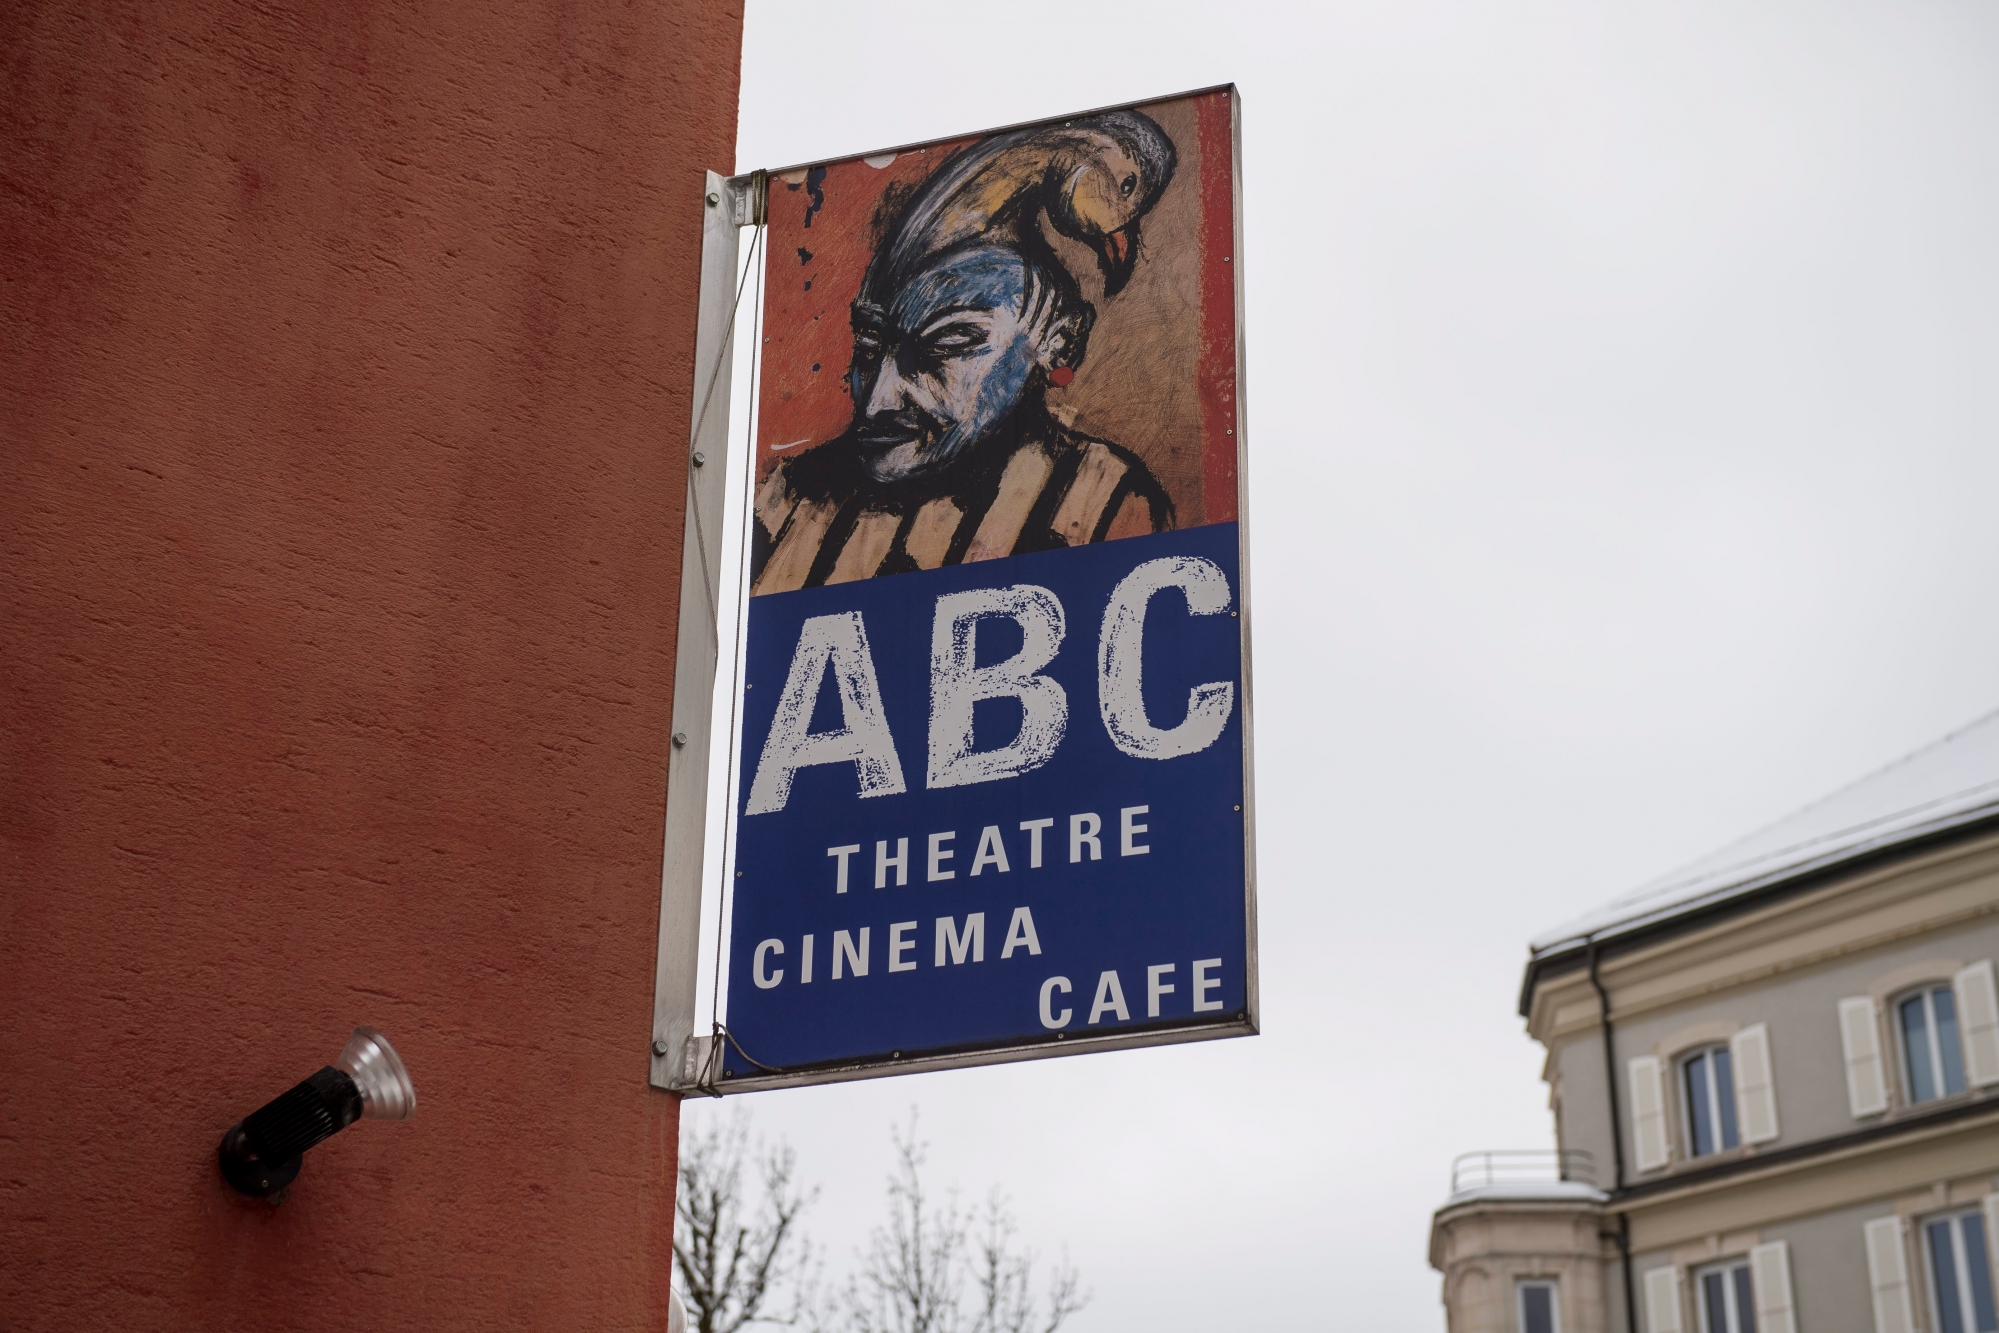 CP du Theatre ABC pour son 50e anniversaire

La Chaux-de-Fonds, le 11.01.2017
Photo : Lucas Vuitel LA CHAUX-DE-FONDS